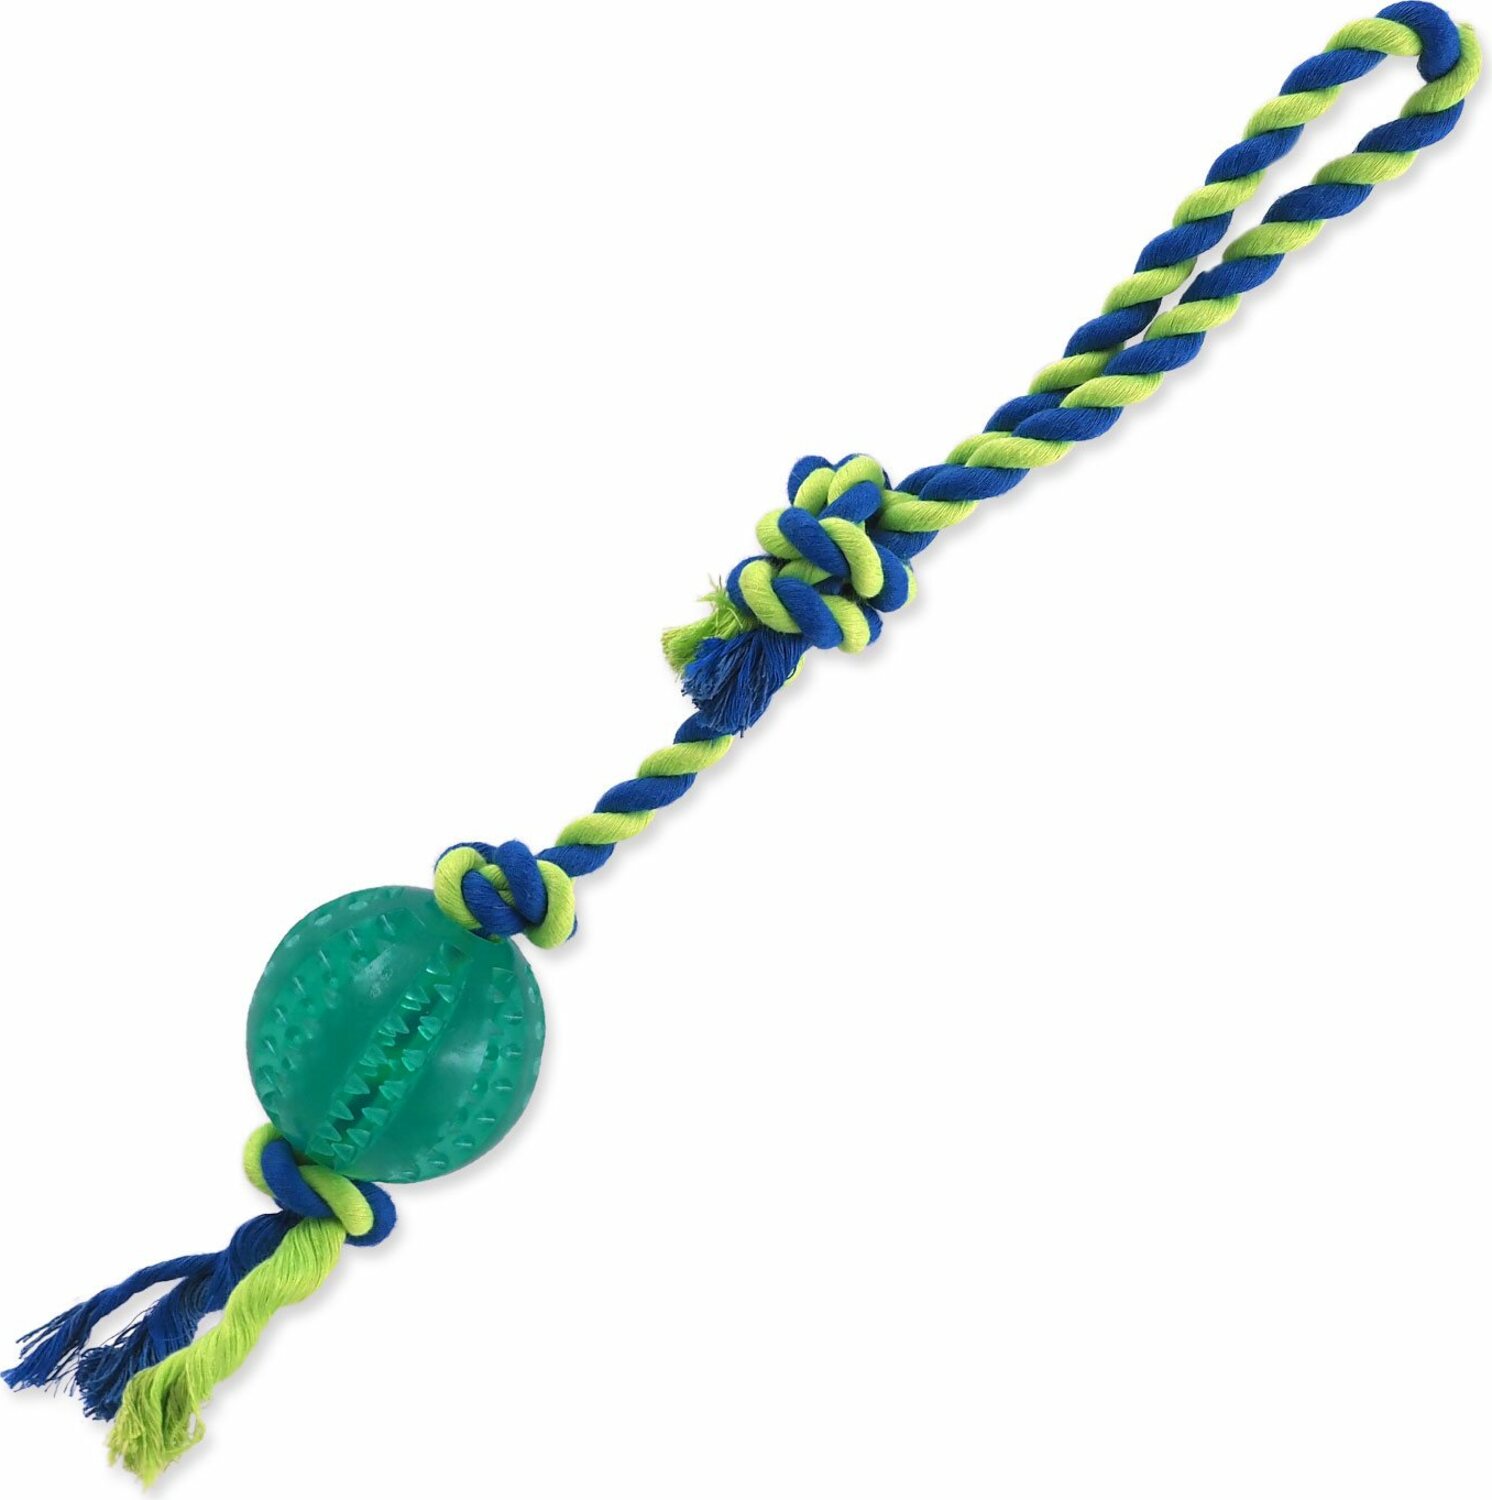 Hračka Dog Fantasy DENTAL MINT míč házecí s provazem smyčka zelená 7x50cm